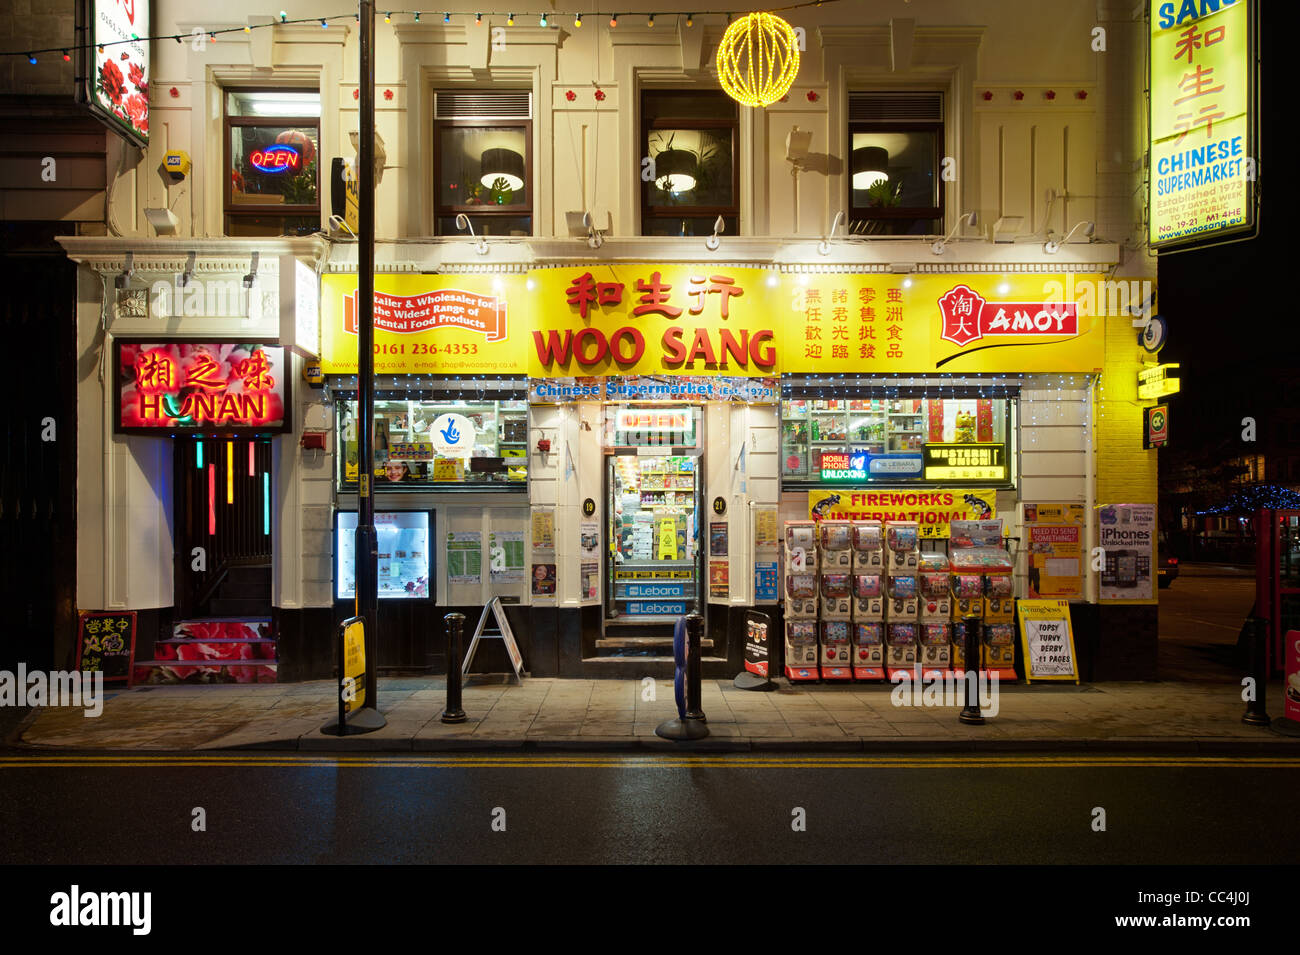 Le supermarché chinois, Woo a chanté, situé sur George Street dans le quartier chinois de Manchester, Royaume-Uni. Banque D'Images